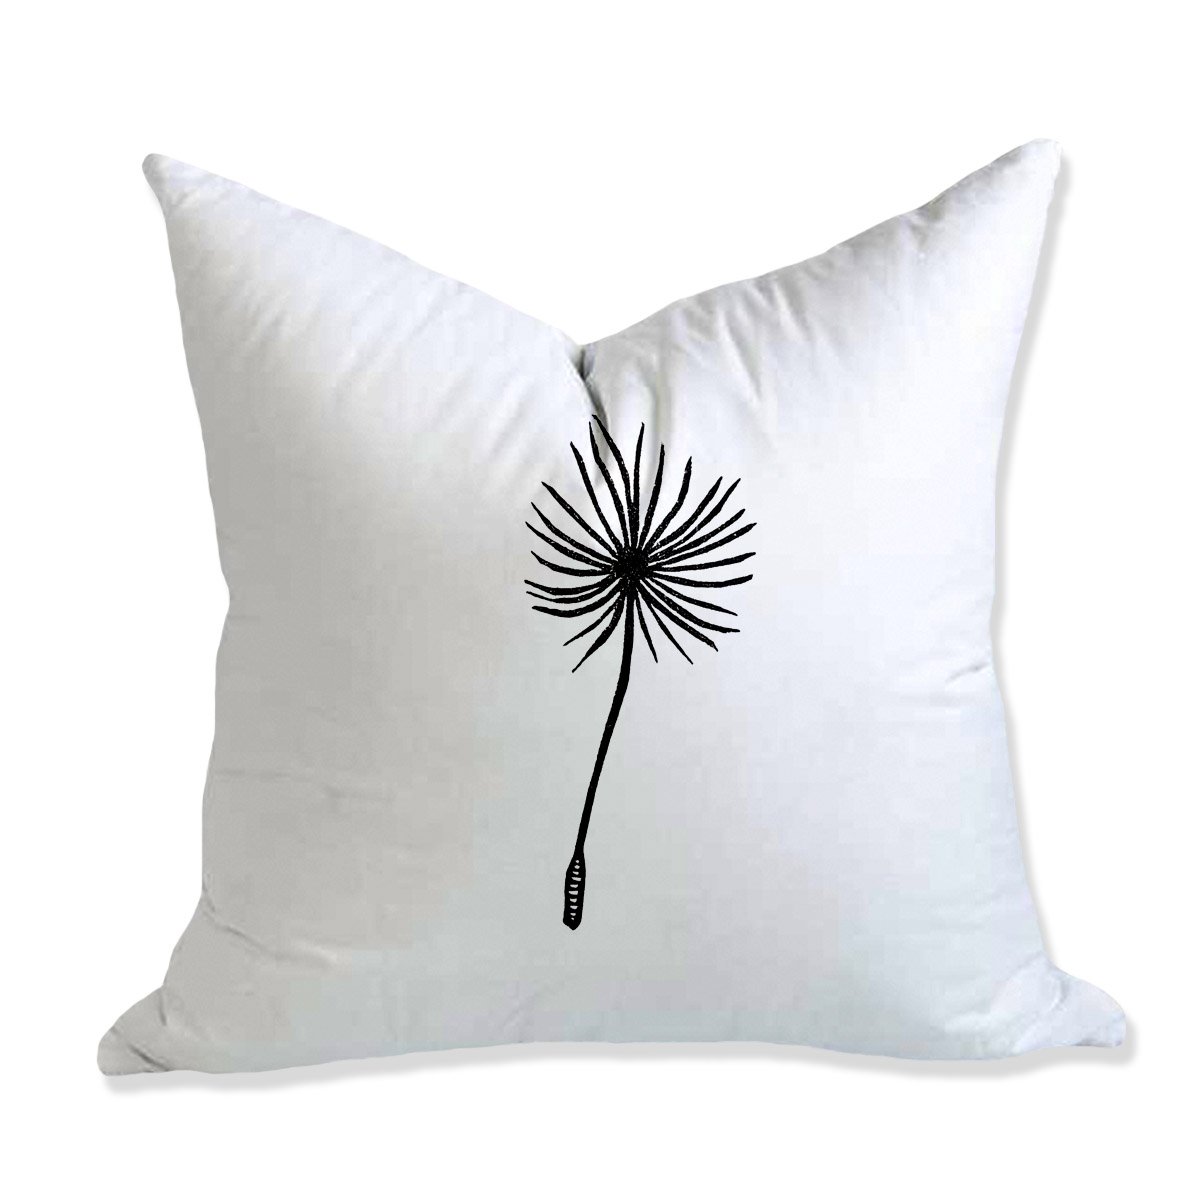 WESTERN SENSIBILITY — Dandelion Pillow by Anomal Press